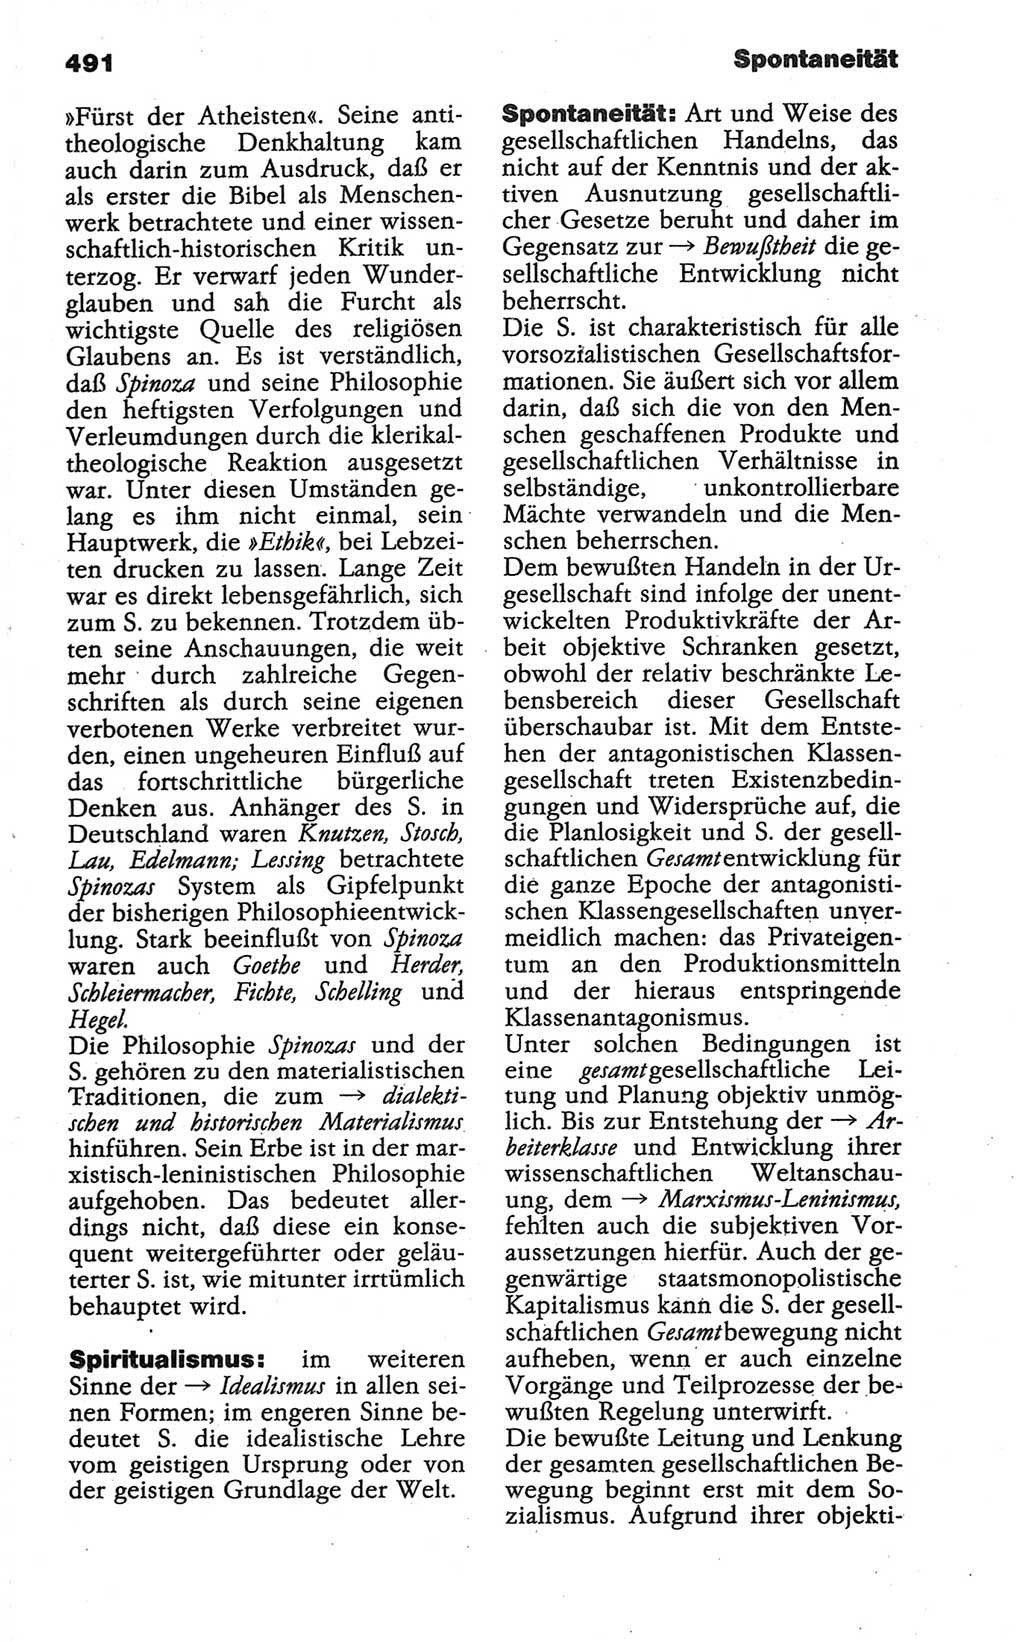 Wörterbuch der marxistisch-leninistischen Philosophie [Deutsche Demokratische Republik (DDR)] 1986, Seite 491 (Wb. ML Phil. DDR 1986, S. 491)